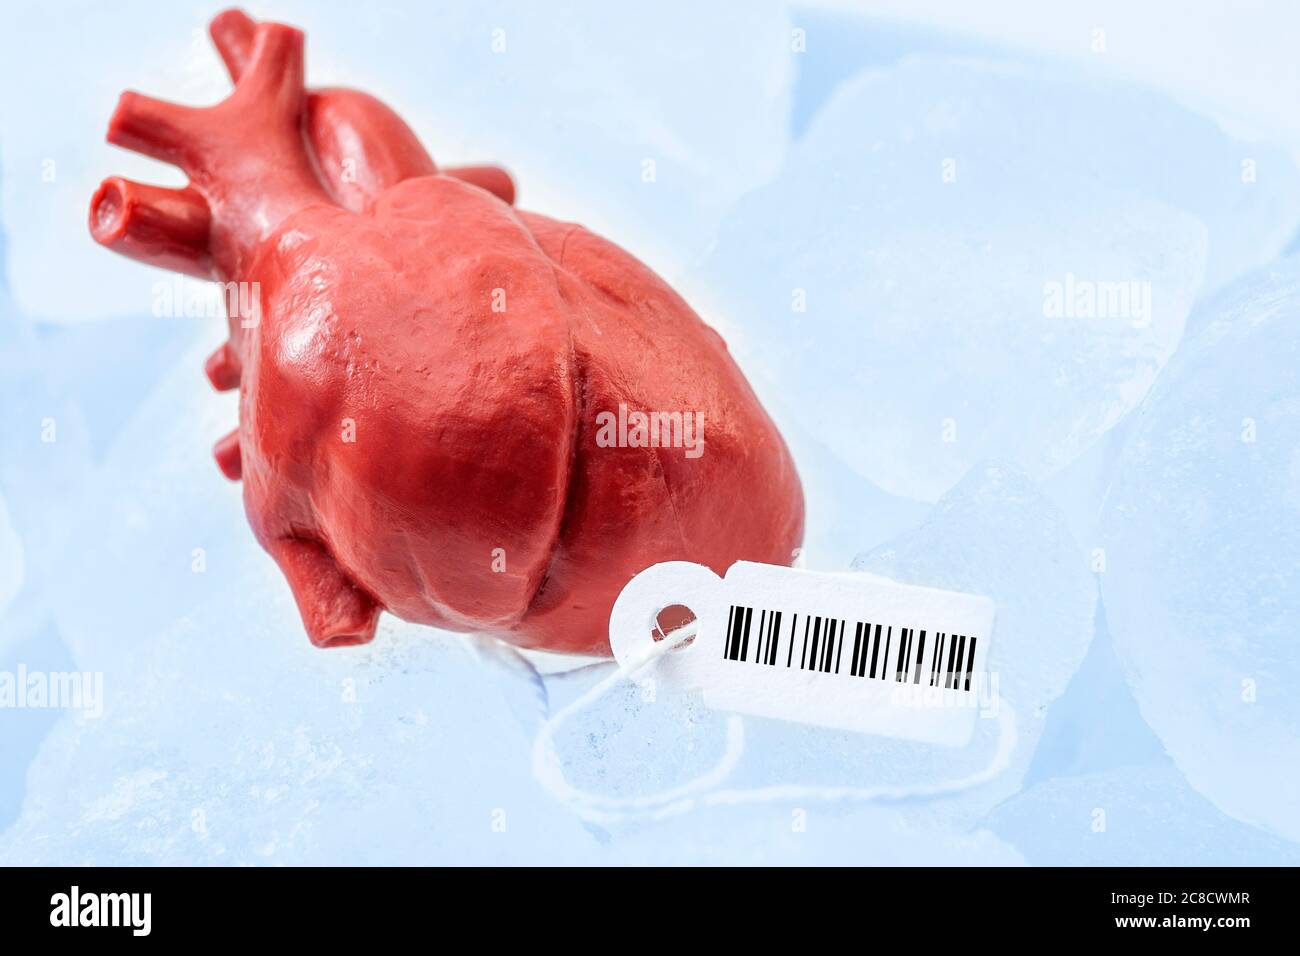 Traffico di organi umani, mercato nero di organi interni e tema di concetto di procedura medica illegale con cuore donatore congelato con tag e codice a barre allegati, p Foto Stock